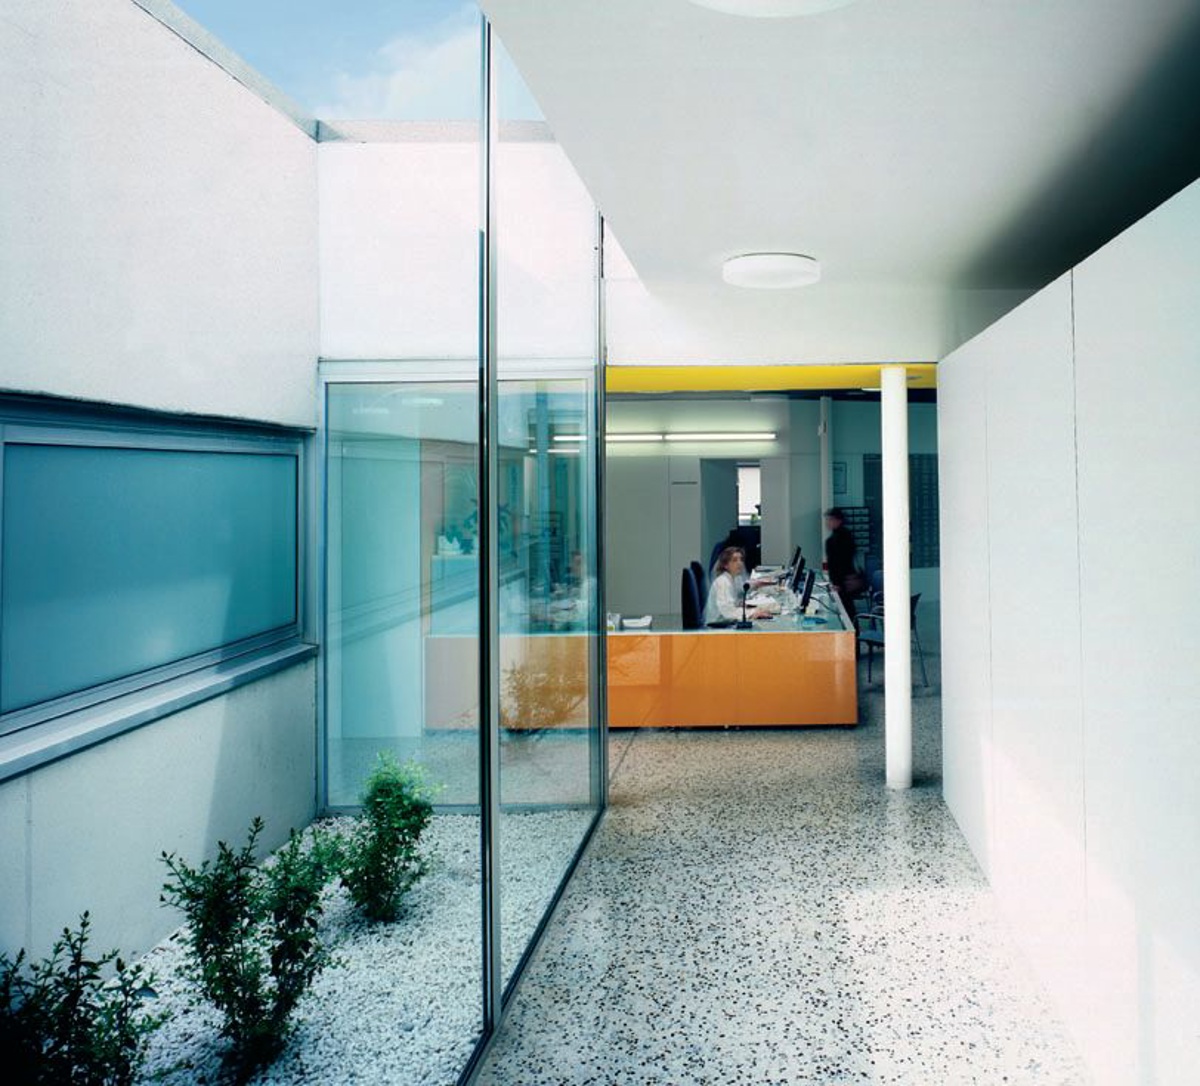  Primary Care Centre "Girona 3